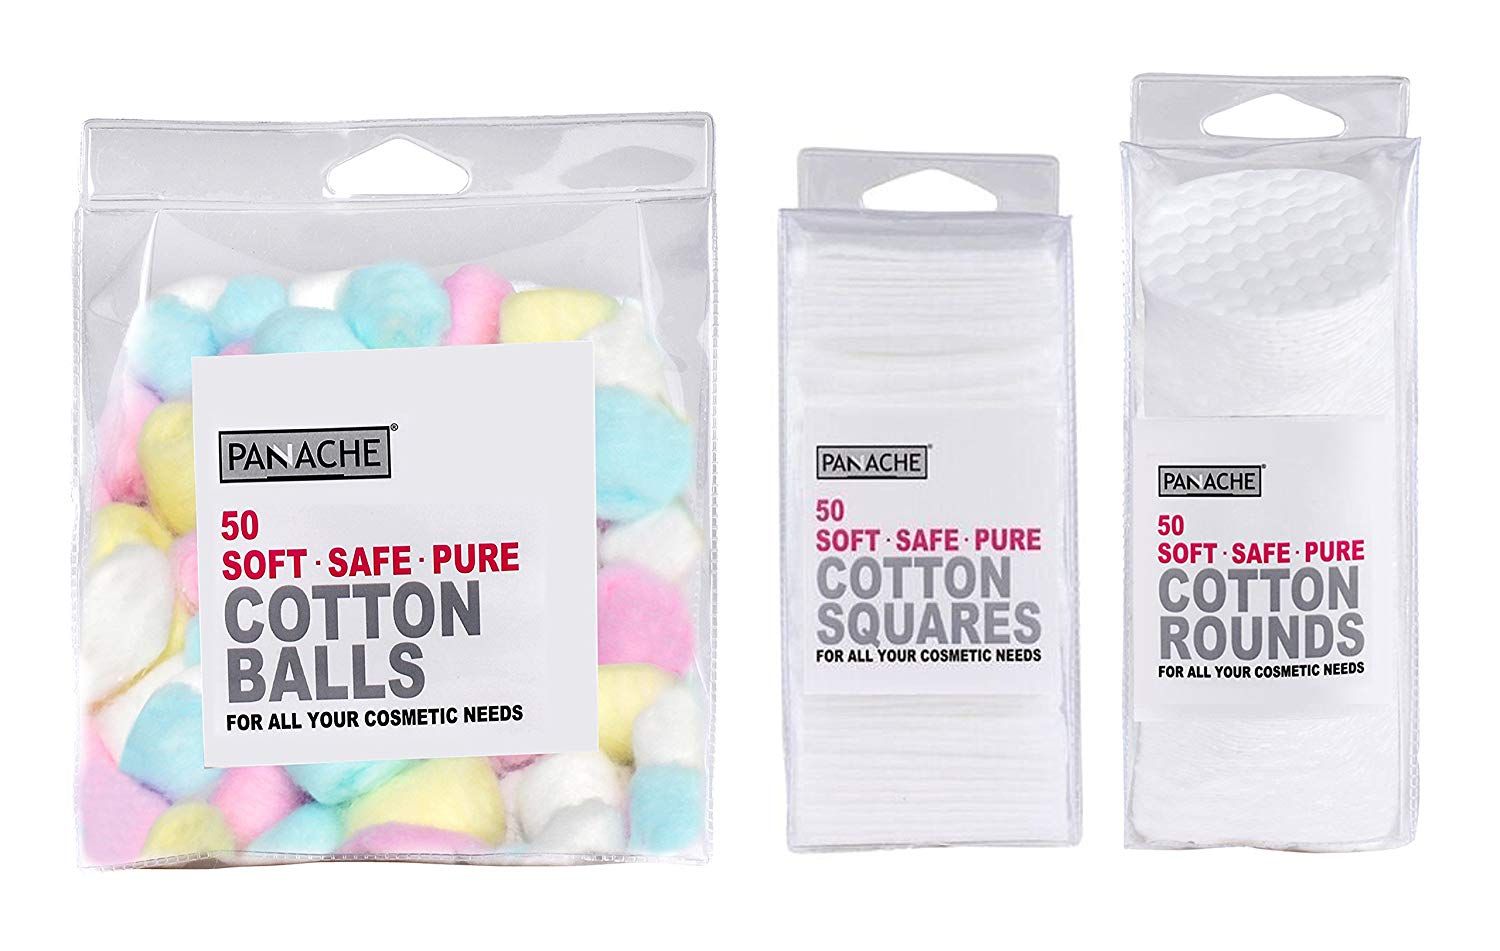 Buy Panache Total Cotton Essentials - Cotton Balls,Cotton Squares & Cotton Rounds(50 Each) - Purplle